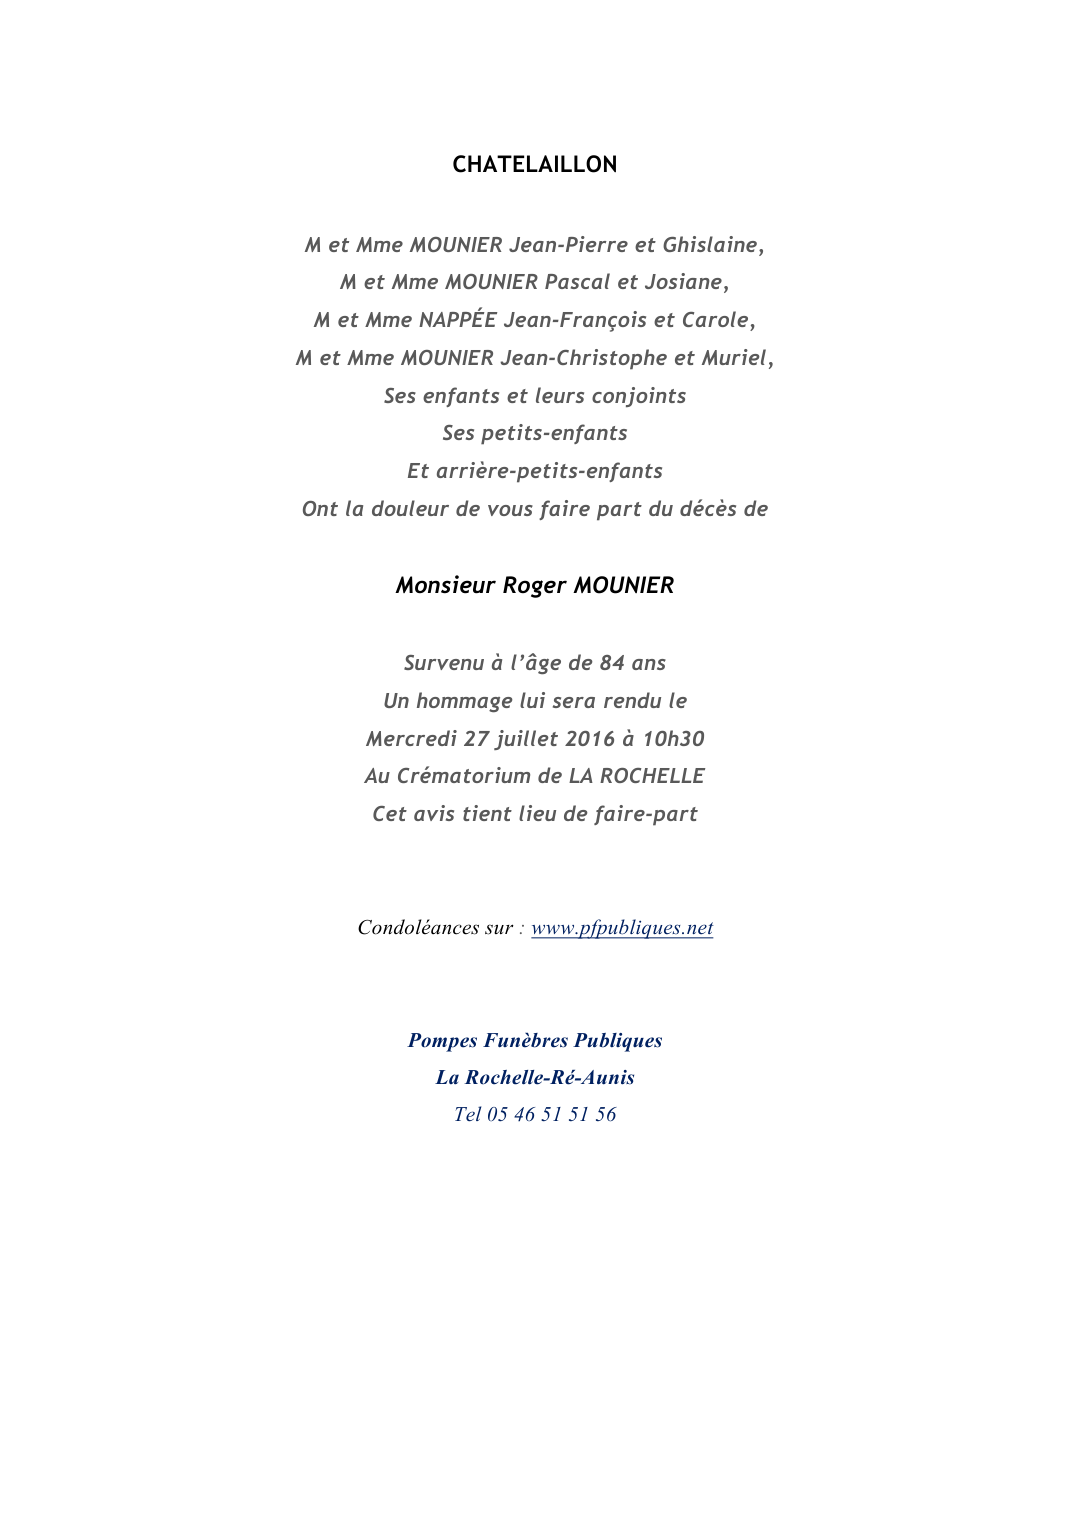 Deces De Monsieur Roger Mounier 22 07 16 Fr Be Annonce Necrologique 1313